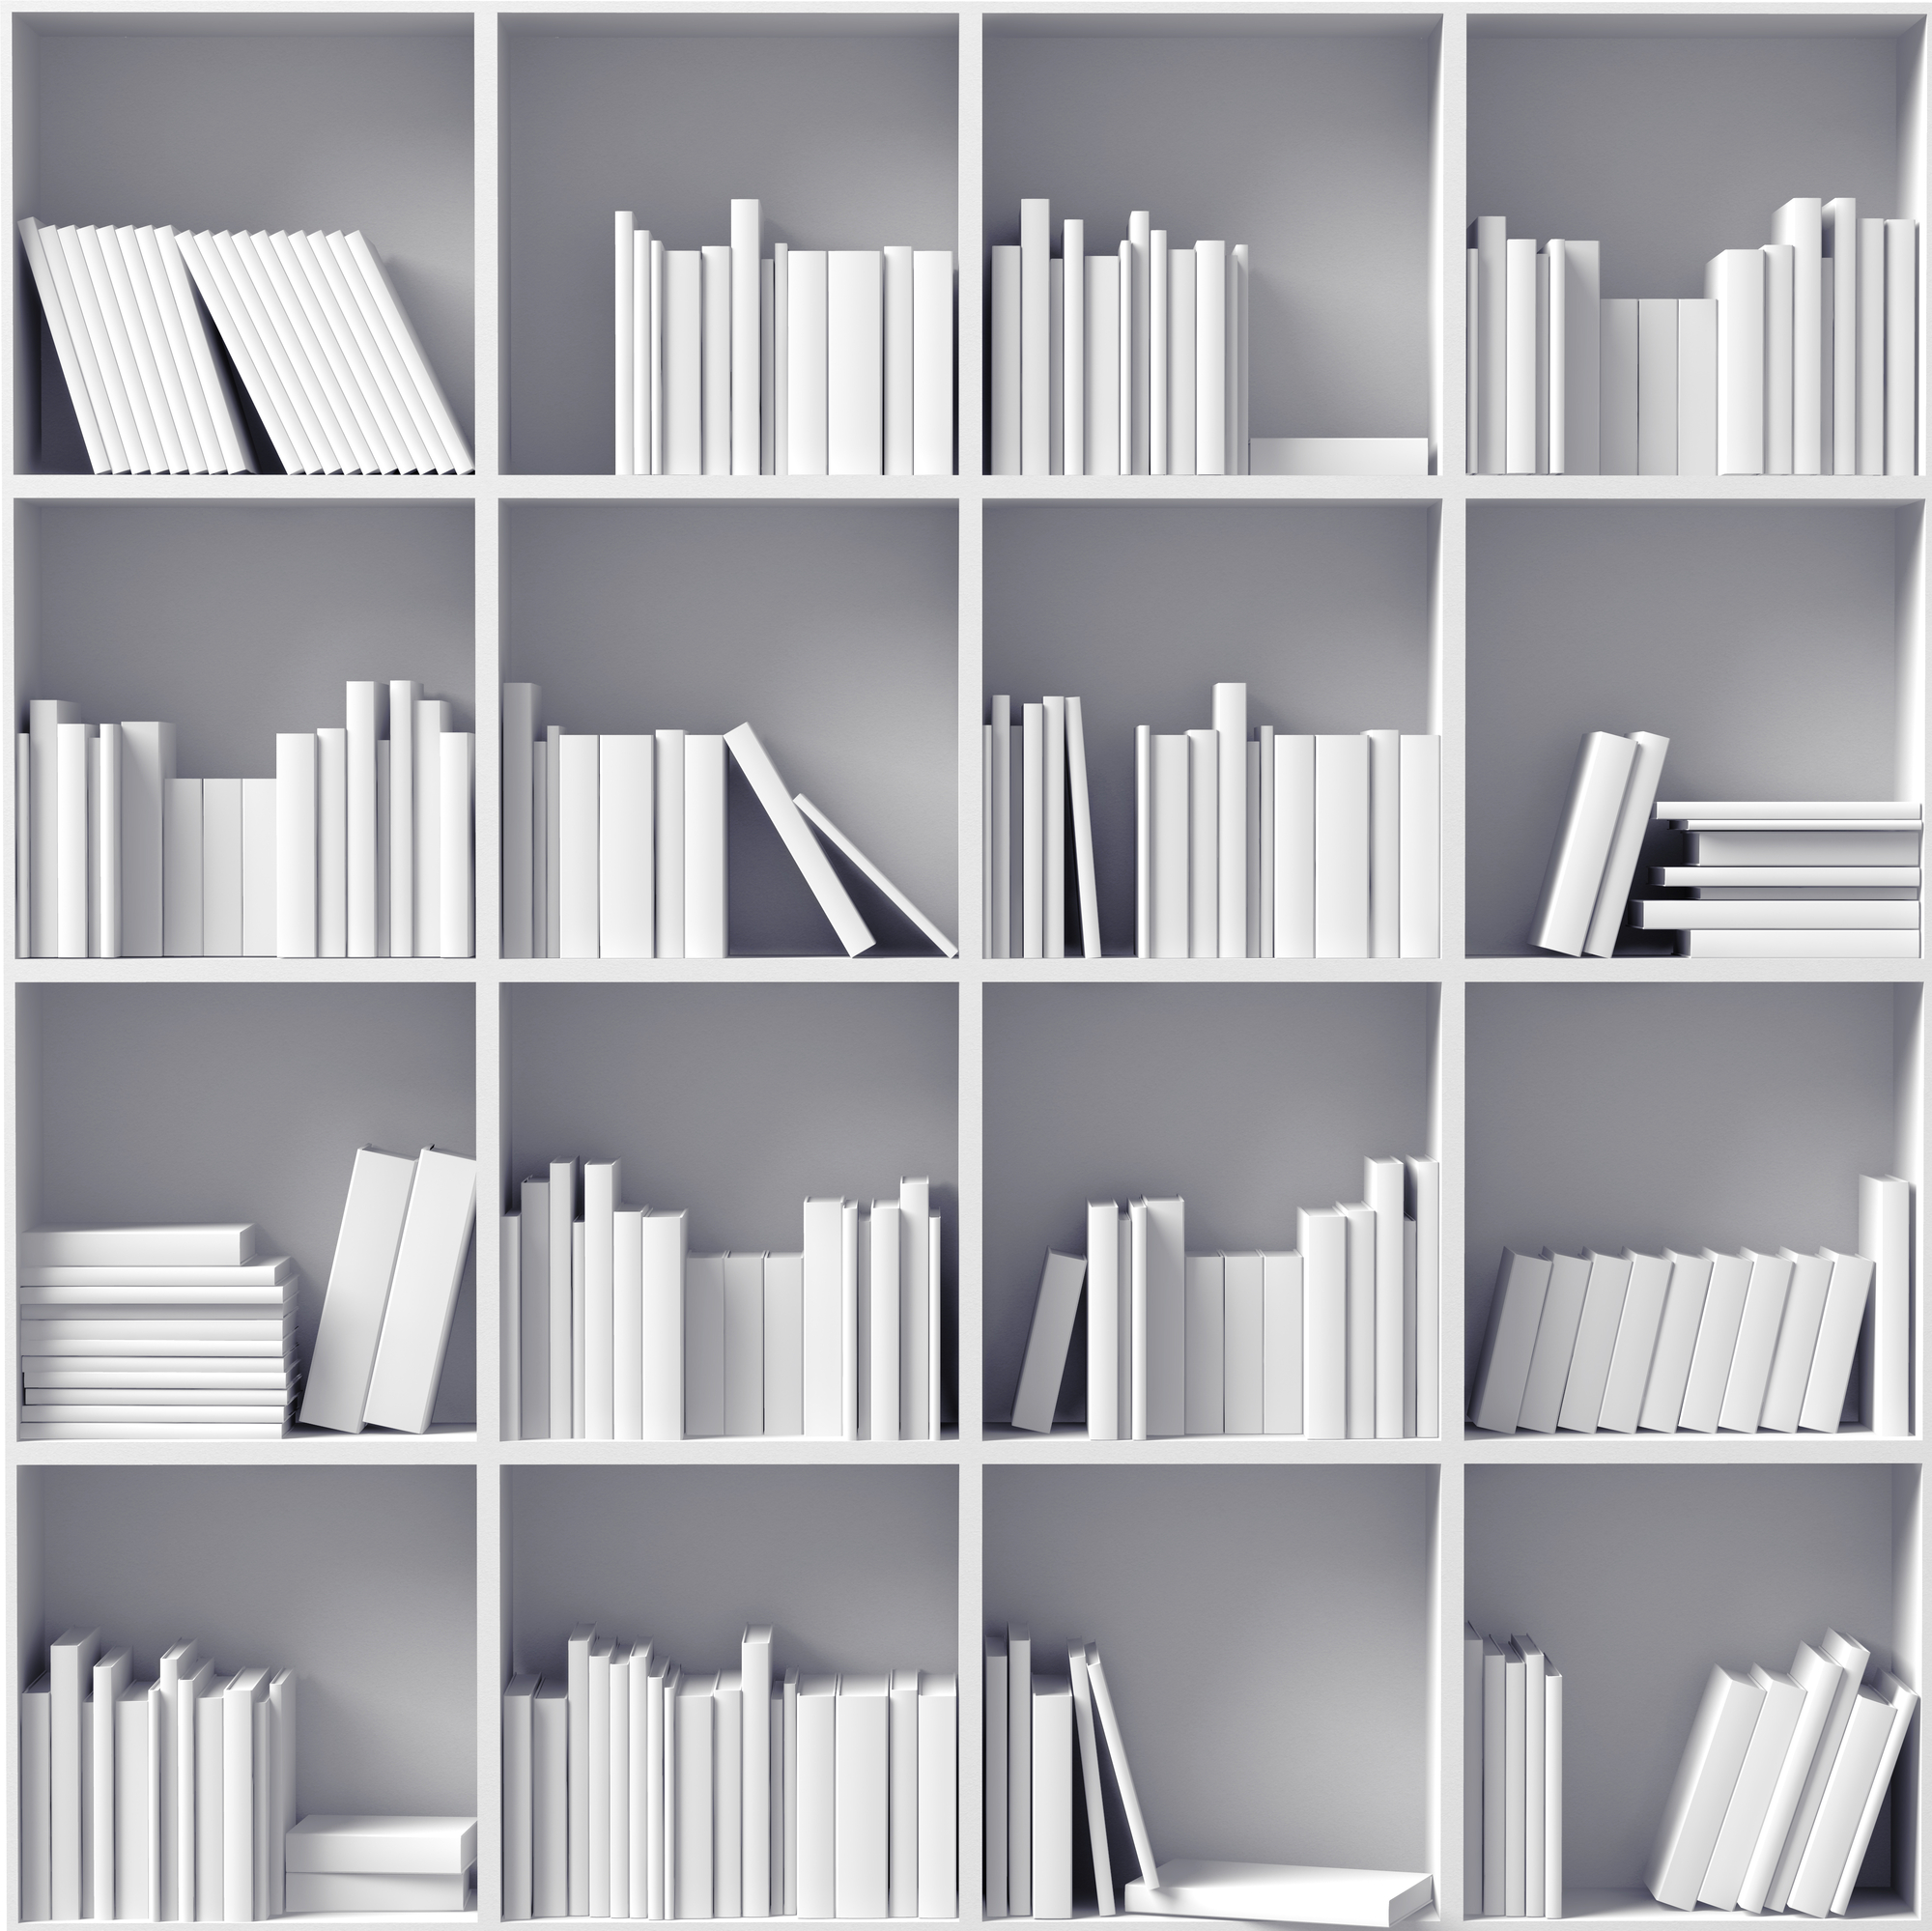 white bookshelves  (illustrated concept)